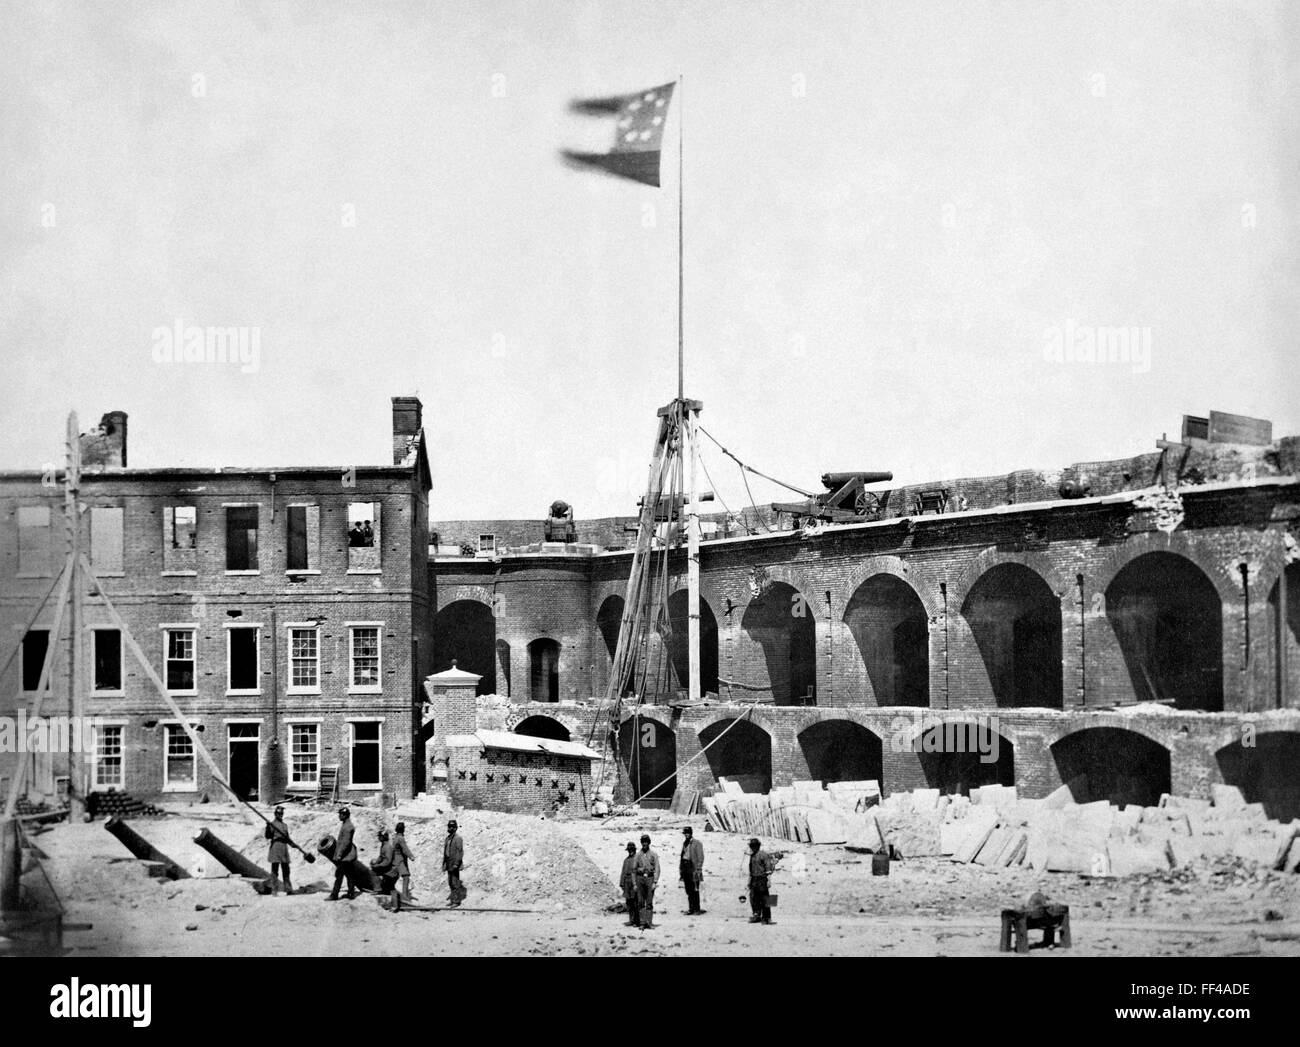 La Guerra Civil americana.La bandera confederada volando en Fort Sumter, Puerto de Charleston el 15 de abril de 1861, tras la capitulación de las tropas de la Unión Foto de stock